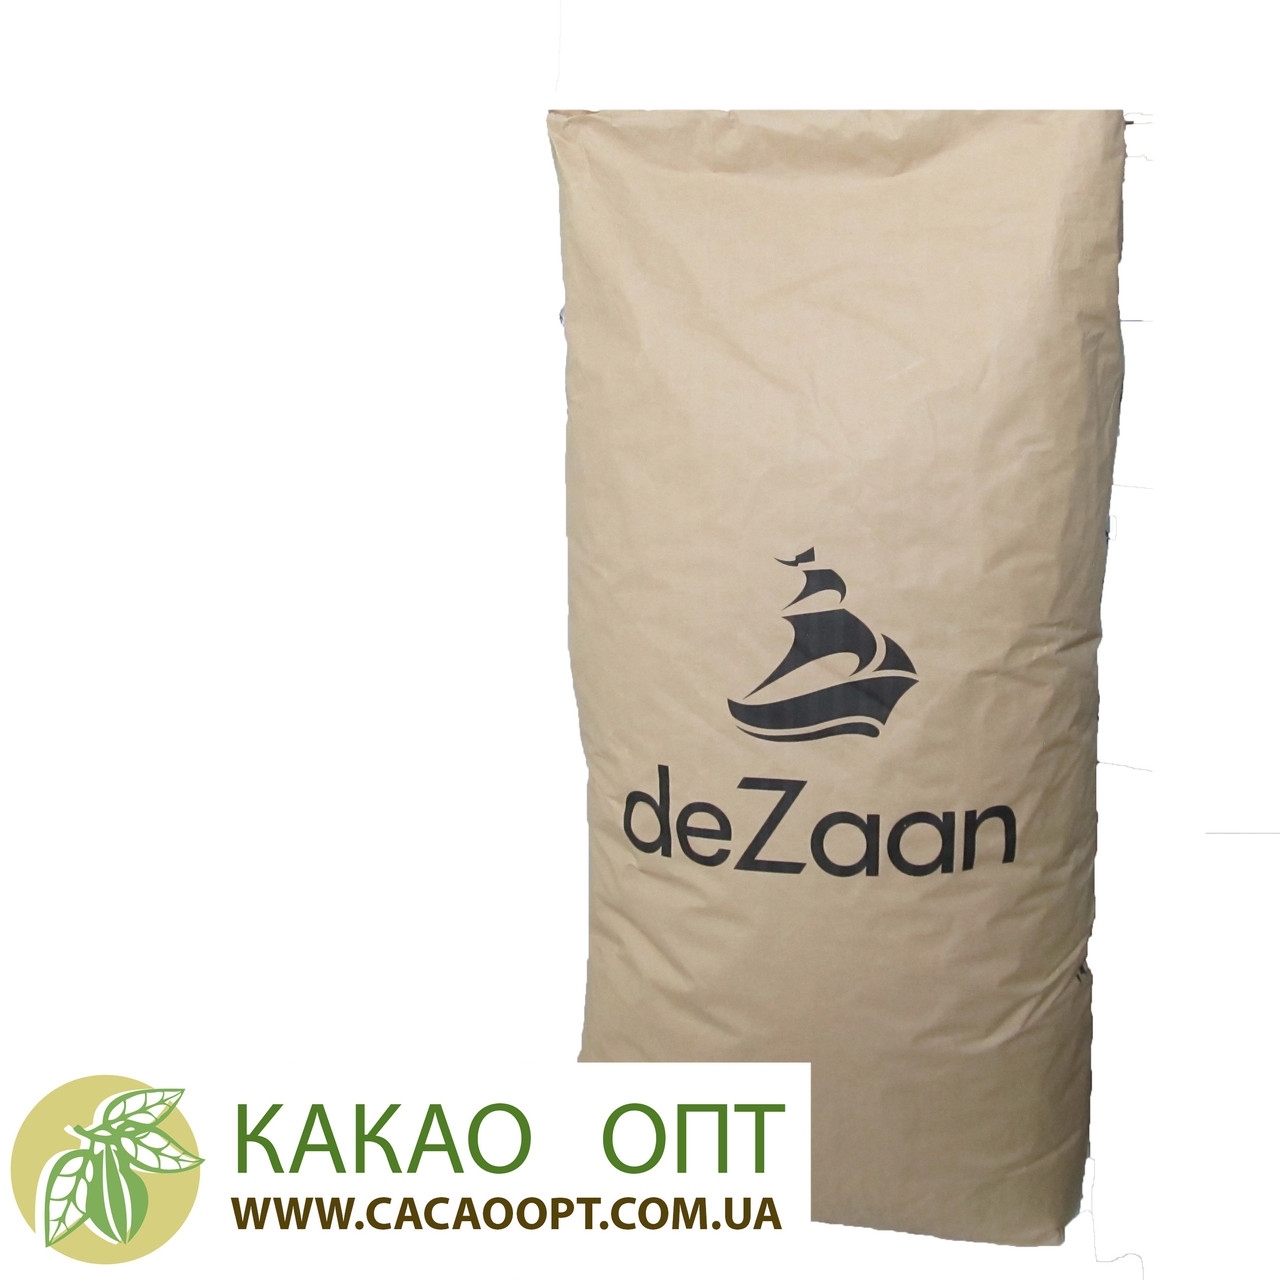 Какао порошок deZaan D21S,20-22%, алкалізований, Нідерланди 25кг